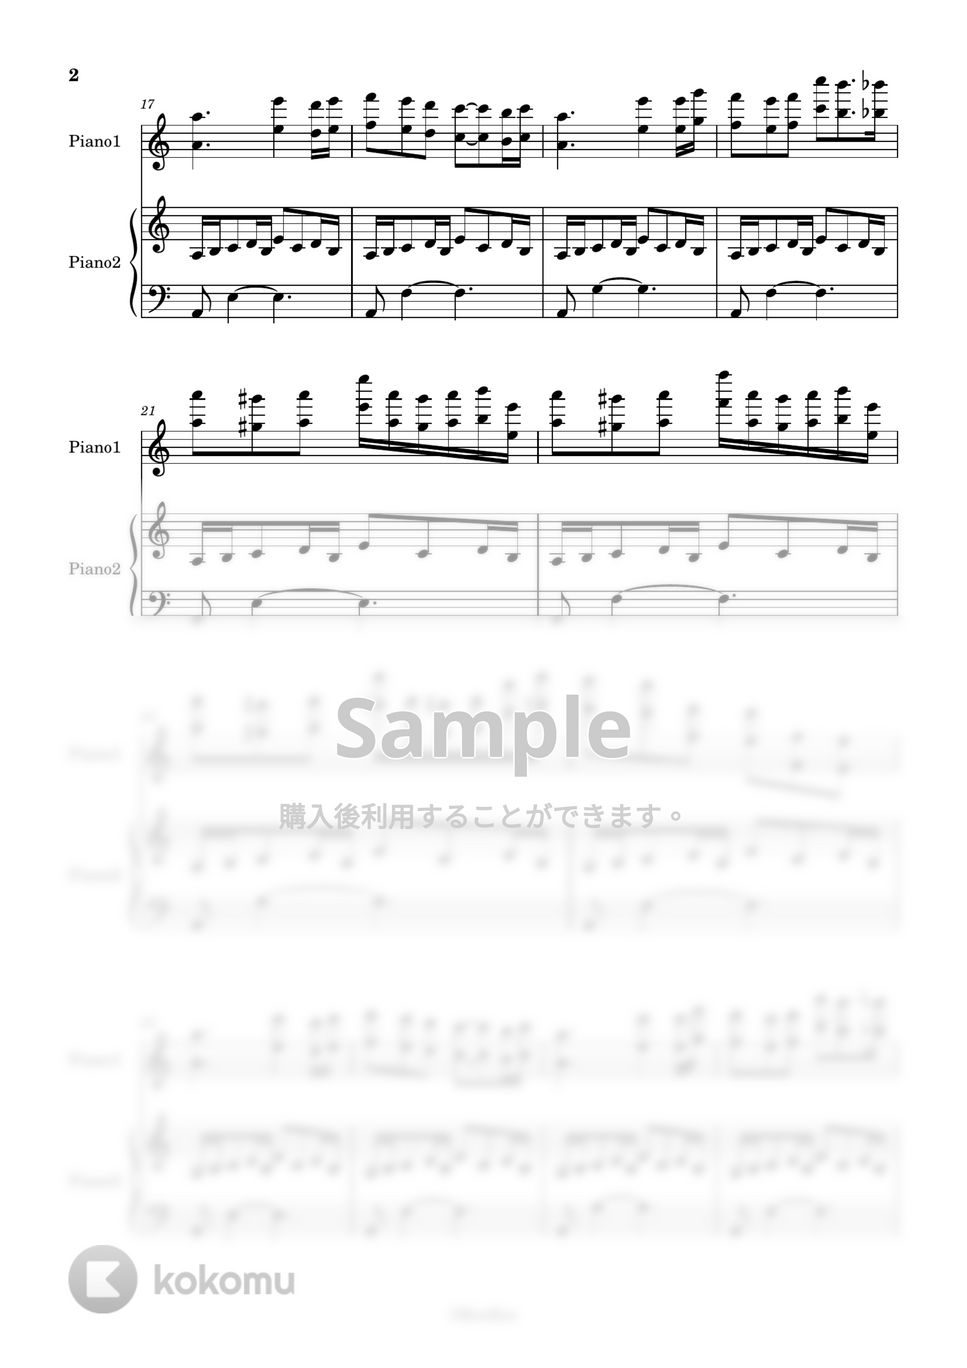 鷺巣詩郎 - Quiproquo 83 (2 pianos) =3EM09= (エヴァンゲリオンQ / EVANGELION 3.0"YOU CAN (NOT) REDO") by KenBan